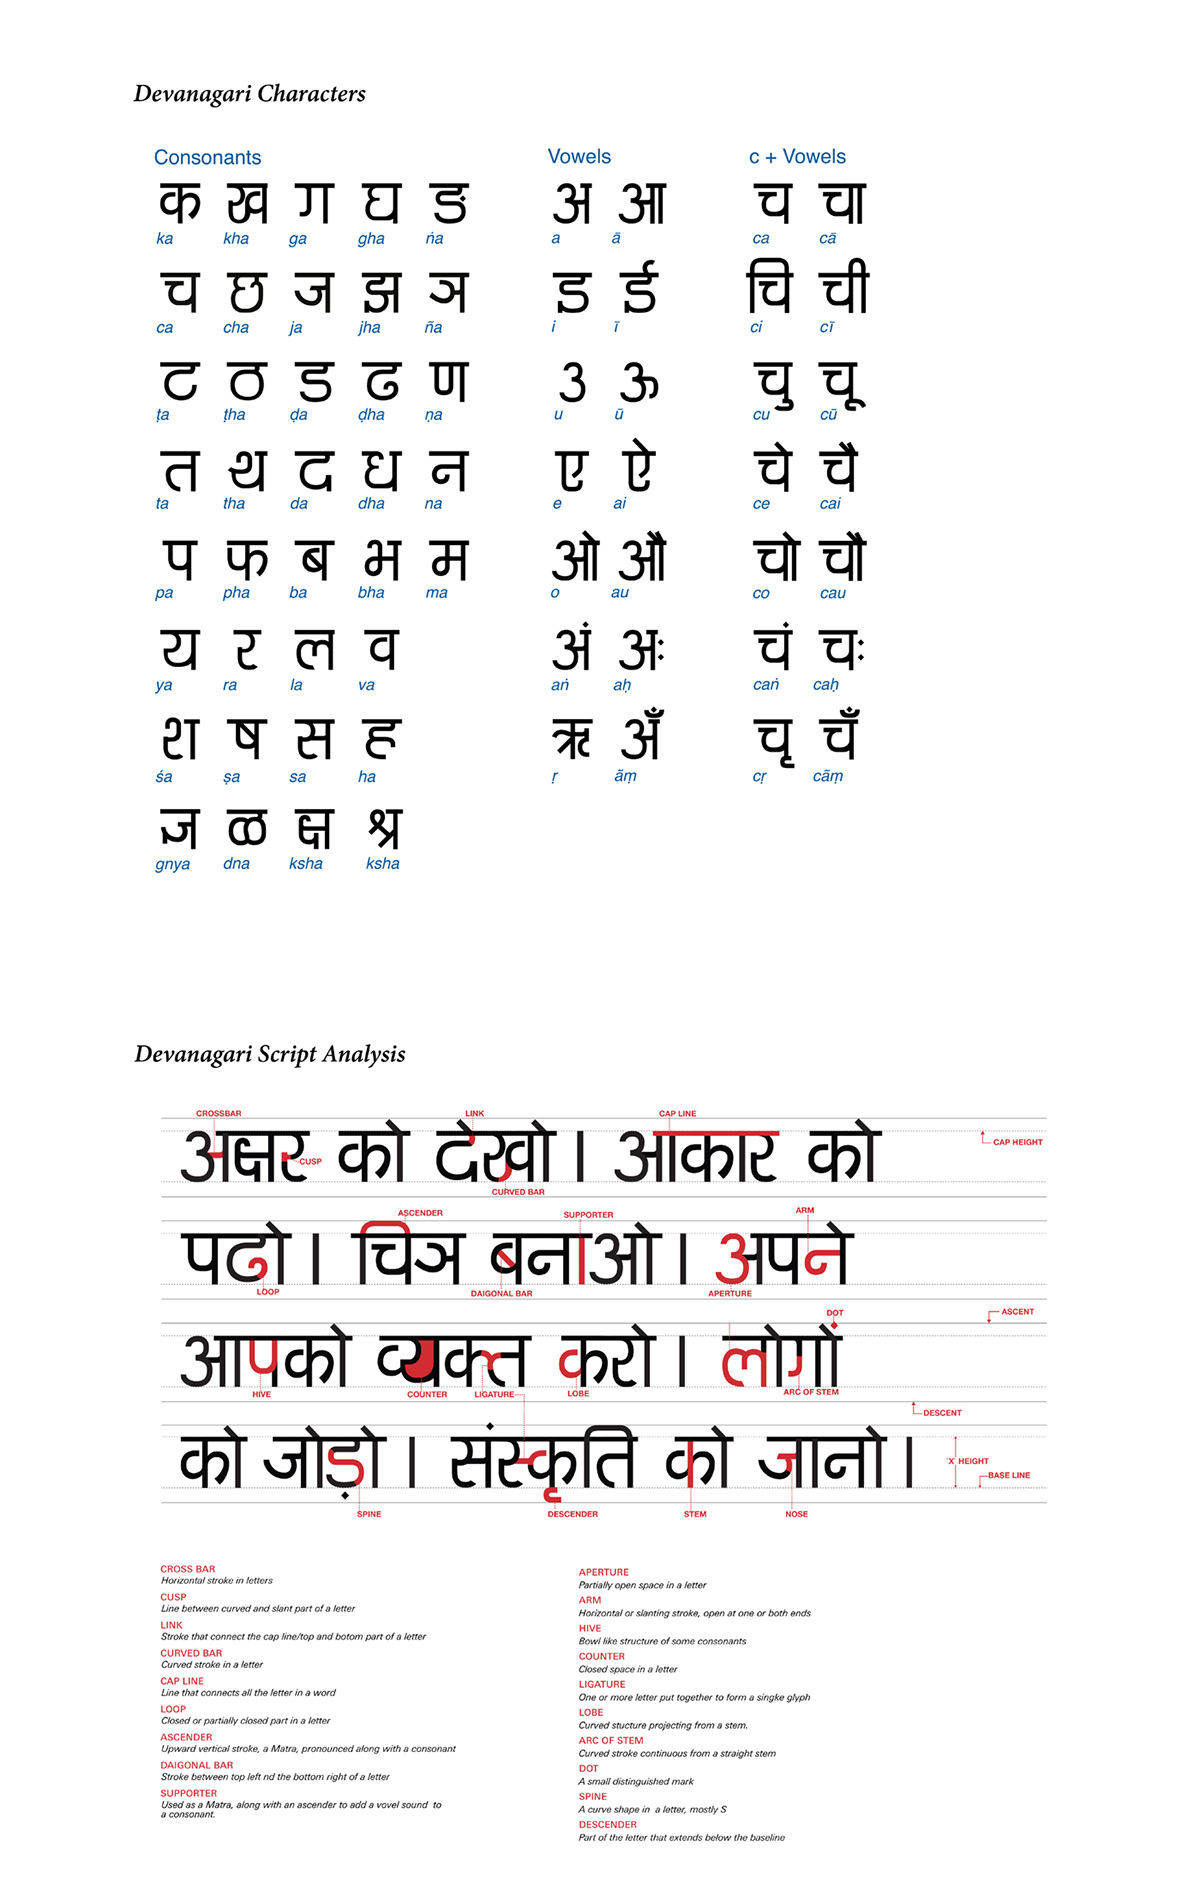 Scripts devanagari japanese hindi graduation work font design kanji 漢字 ひらがな カタカナ Hiragana Katakana 文字デザイン フォント